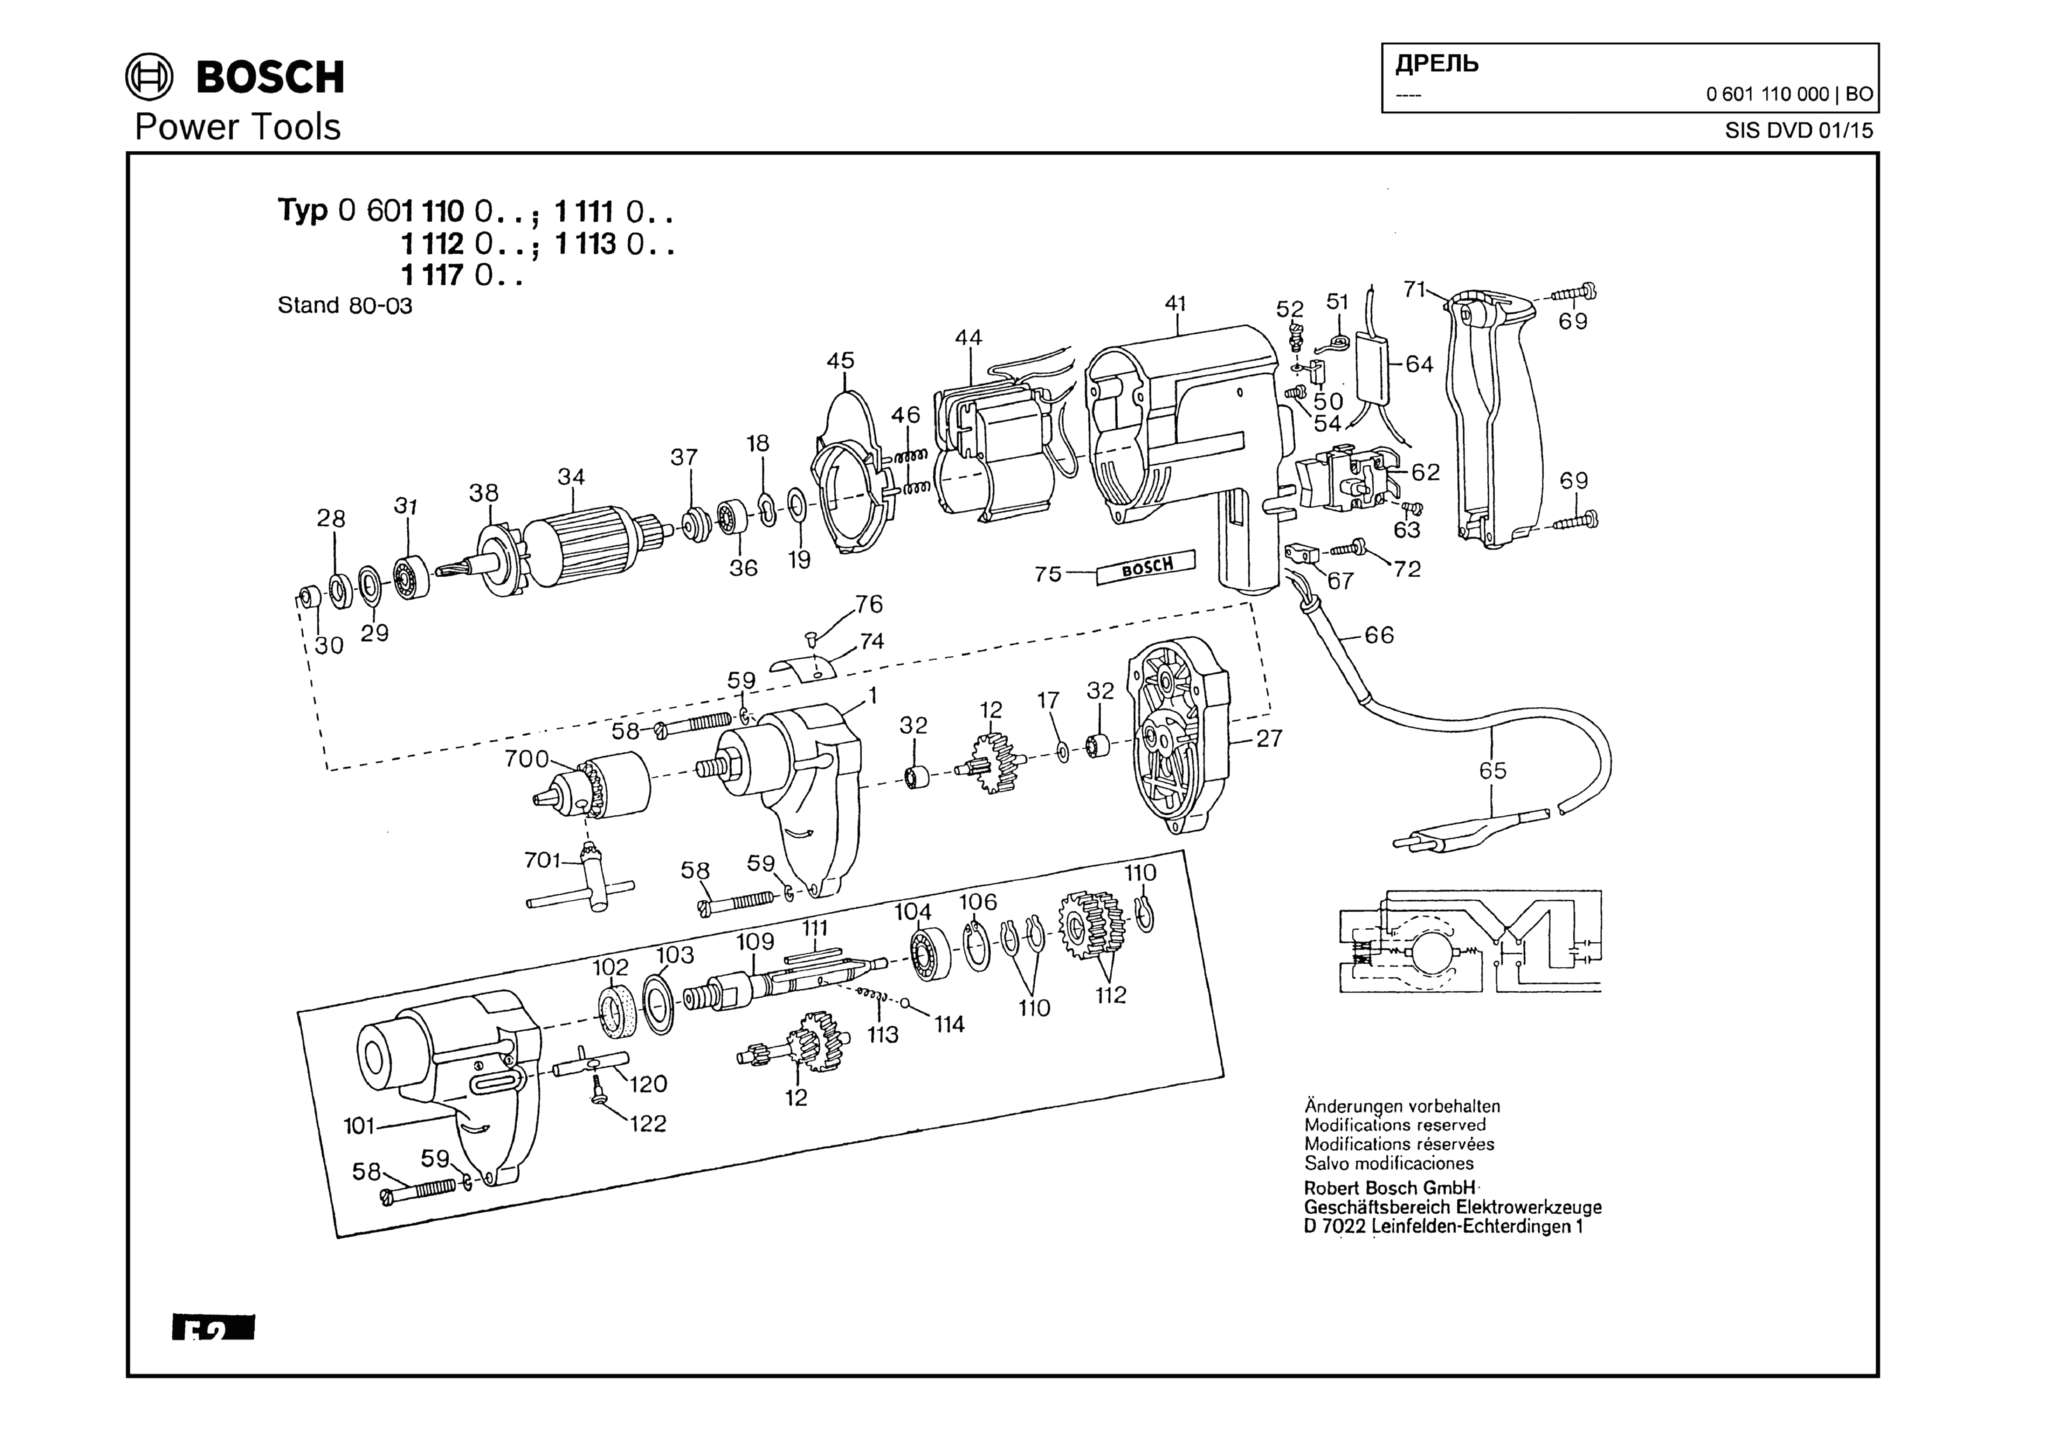 Запчасти, схема и деталировка Bosch (ТИП 0601110000)